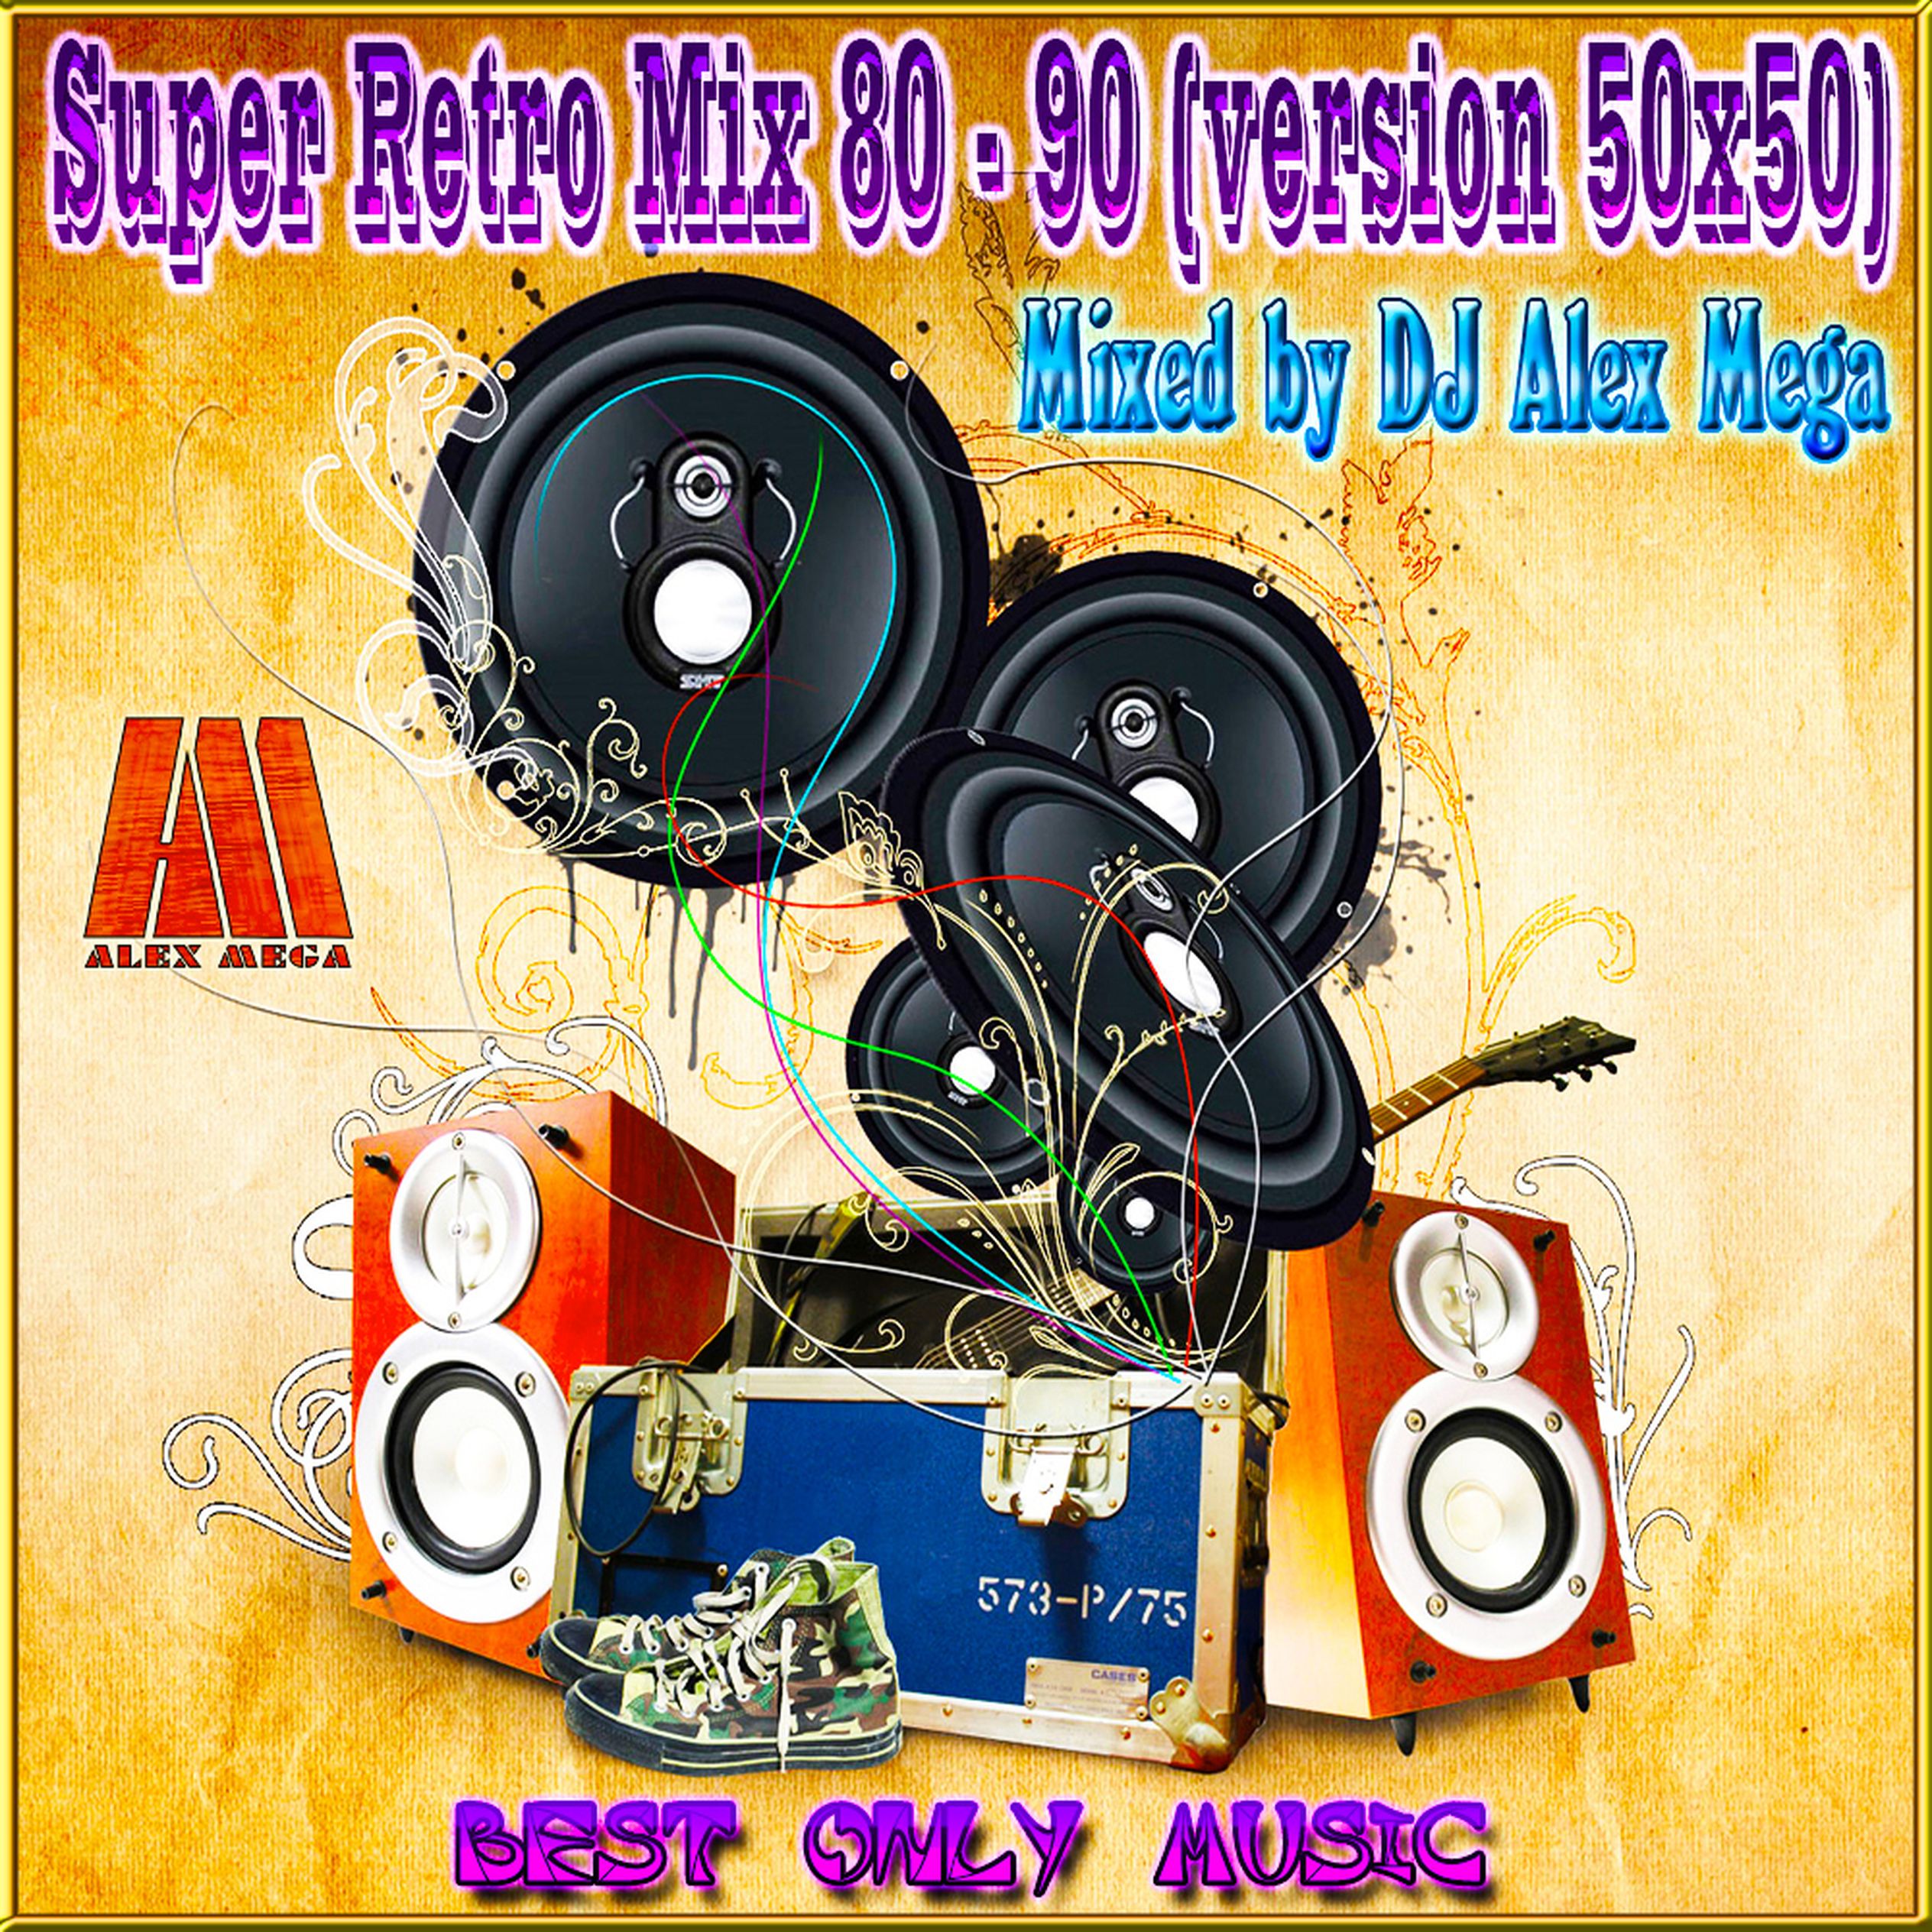 Музыка 80 90 слушать 50 50. Диджей 80-90. Супер мега диджей. DJ Sergio Retro Mix. Retro Mix 80 90.